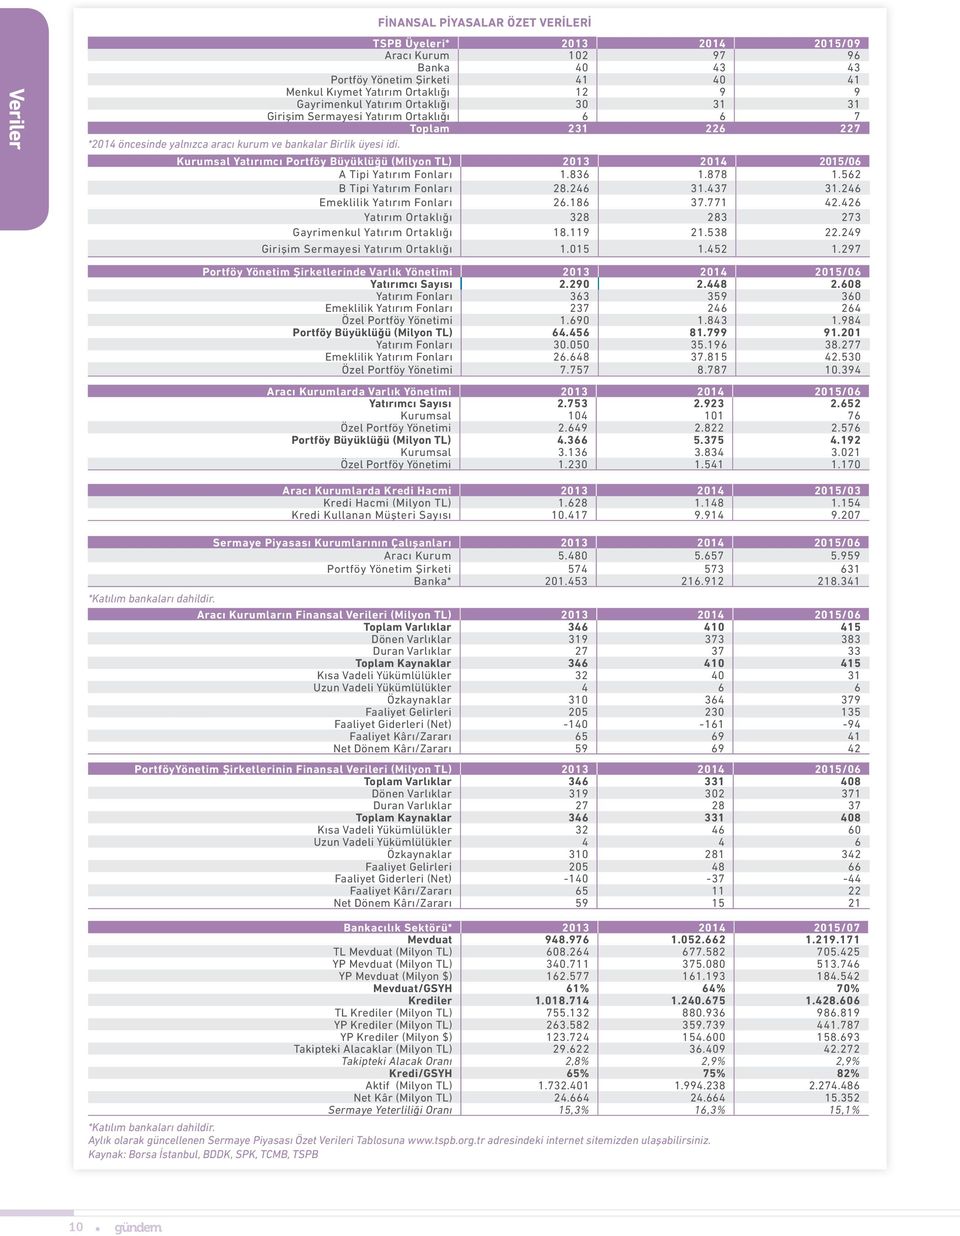 Kurumsal Yatırımcı Portföy Büyüklüğü (Milyon TL) 2013 2014 2015/06 A Tipi Yatırım Fonları 1.836 1.878 1.562 B Tipi Yatırım Fonları 28.246 31.437 31.246 Emeklilik Yatırım Fonları 26.186 37.771 42.